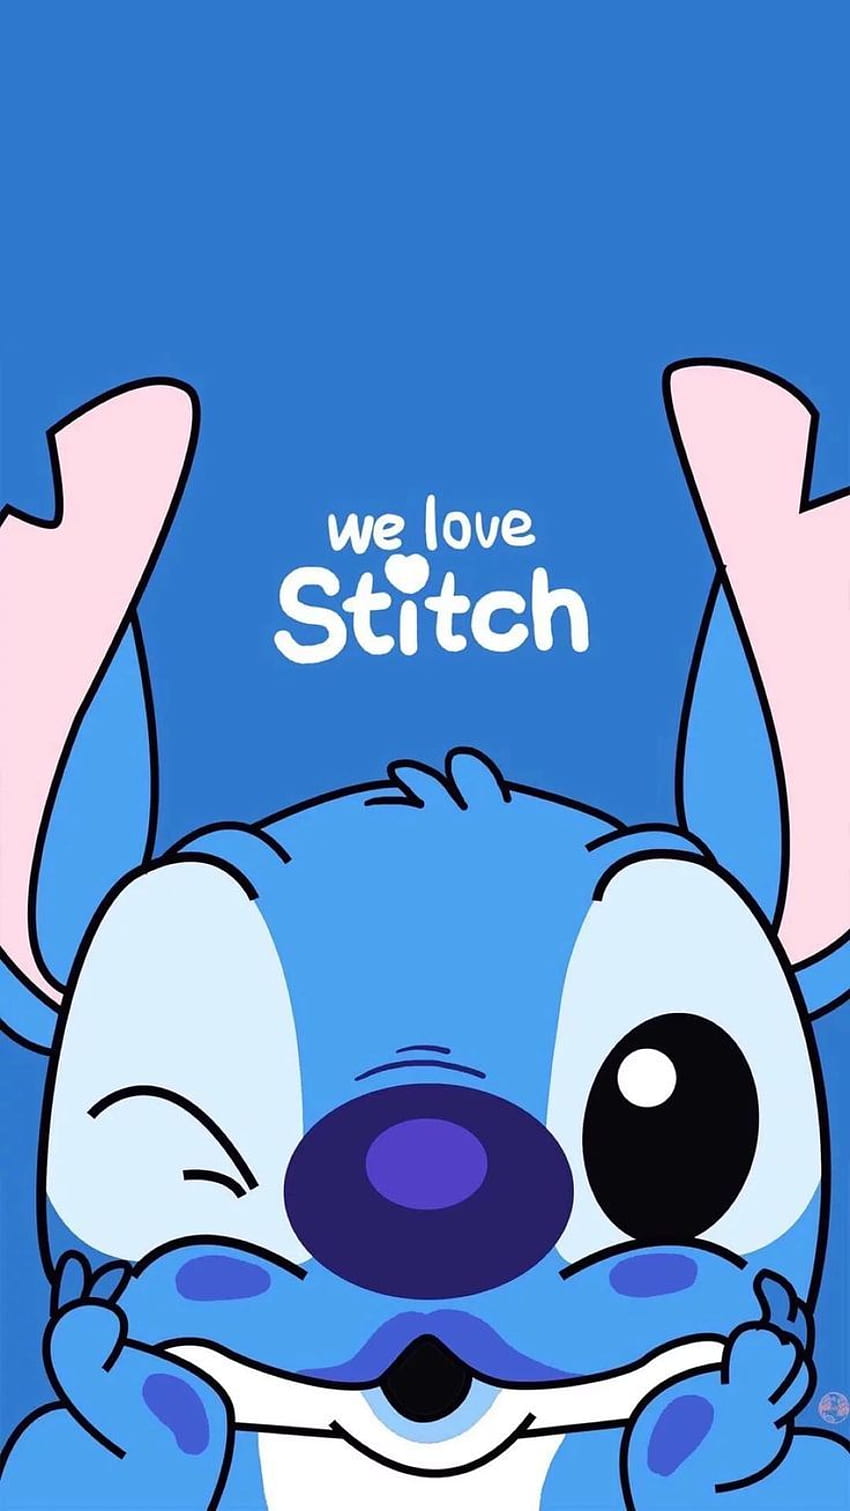 Bộ sưu tập hình nền Lilo và Stitch sẽ khiến bạn đắm chìm trong thế giới đáng yêu của những chú vịt con dễ thương. Tải ngay hình nền Stitch này về điện thoại của bạn để thấy rõ được vẻ đáng yêu và dễ thương của các nhân vật trong phim.